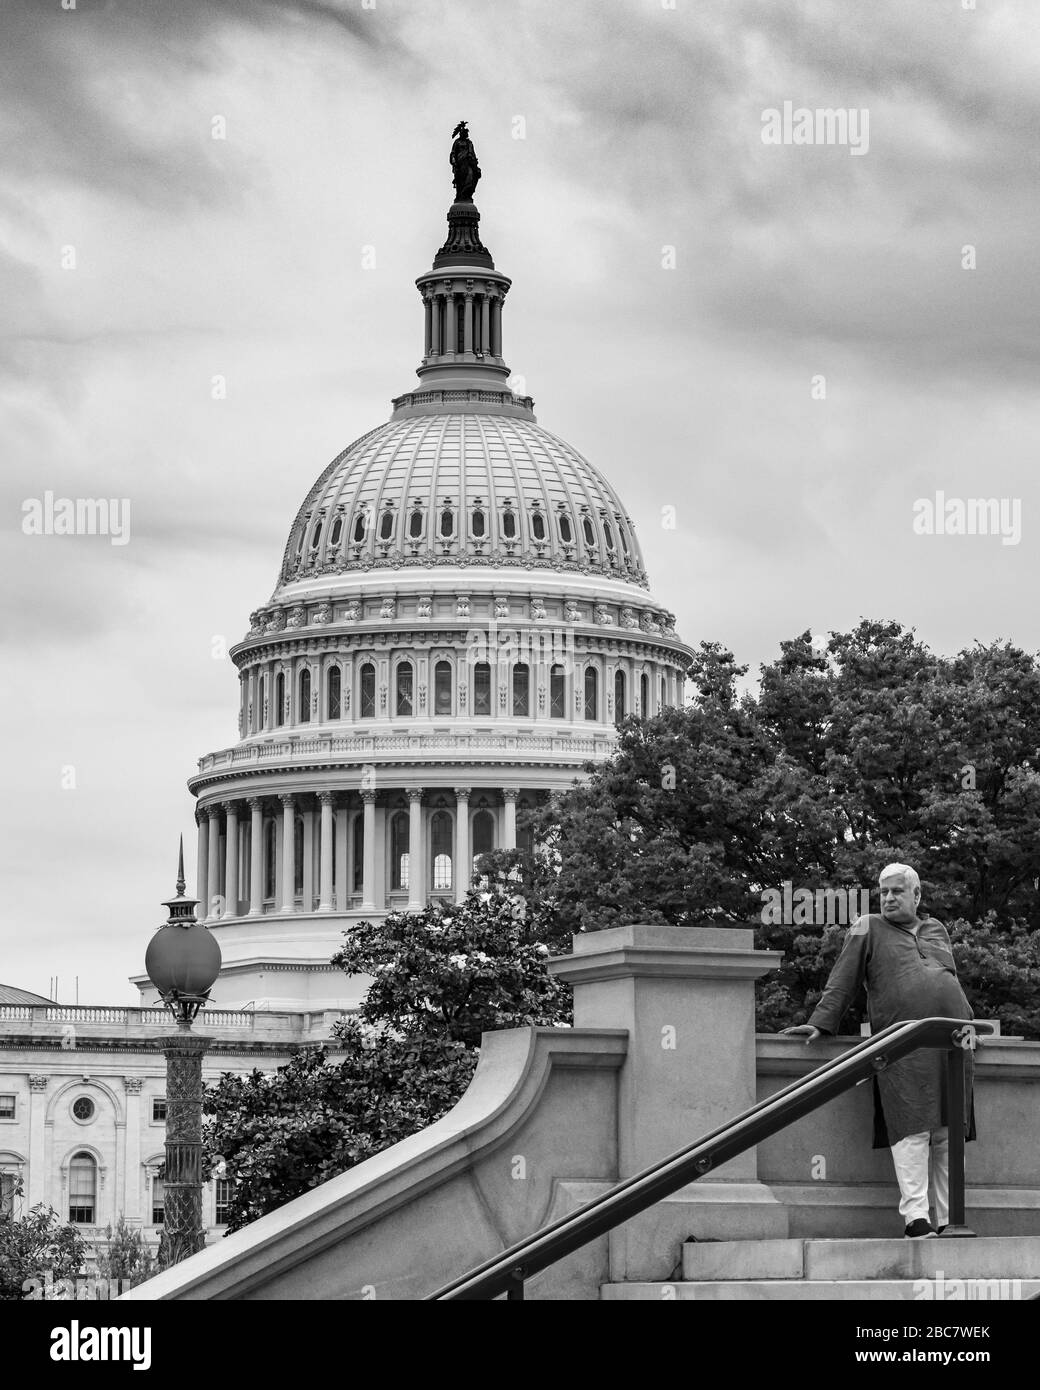 Un homme en shalwar Kameez se tient sur les marches de la Bibliothèque du Congrès avec le dôme blanc du Capitole américain comme toile de fond. Banque D'Images